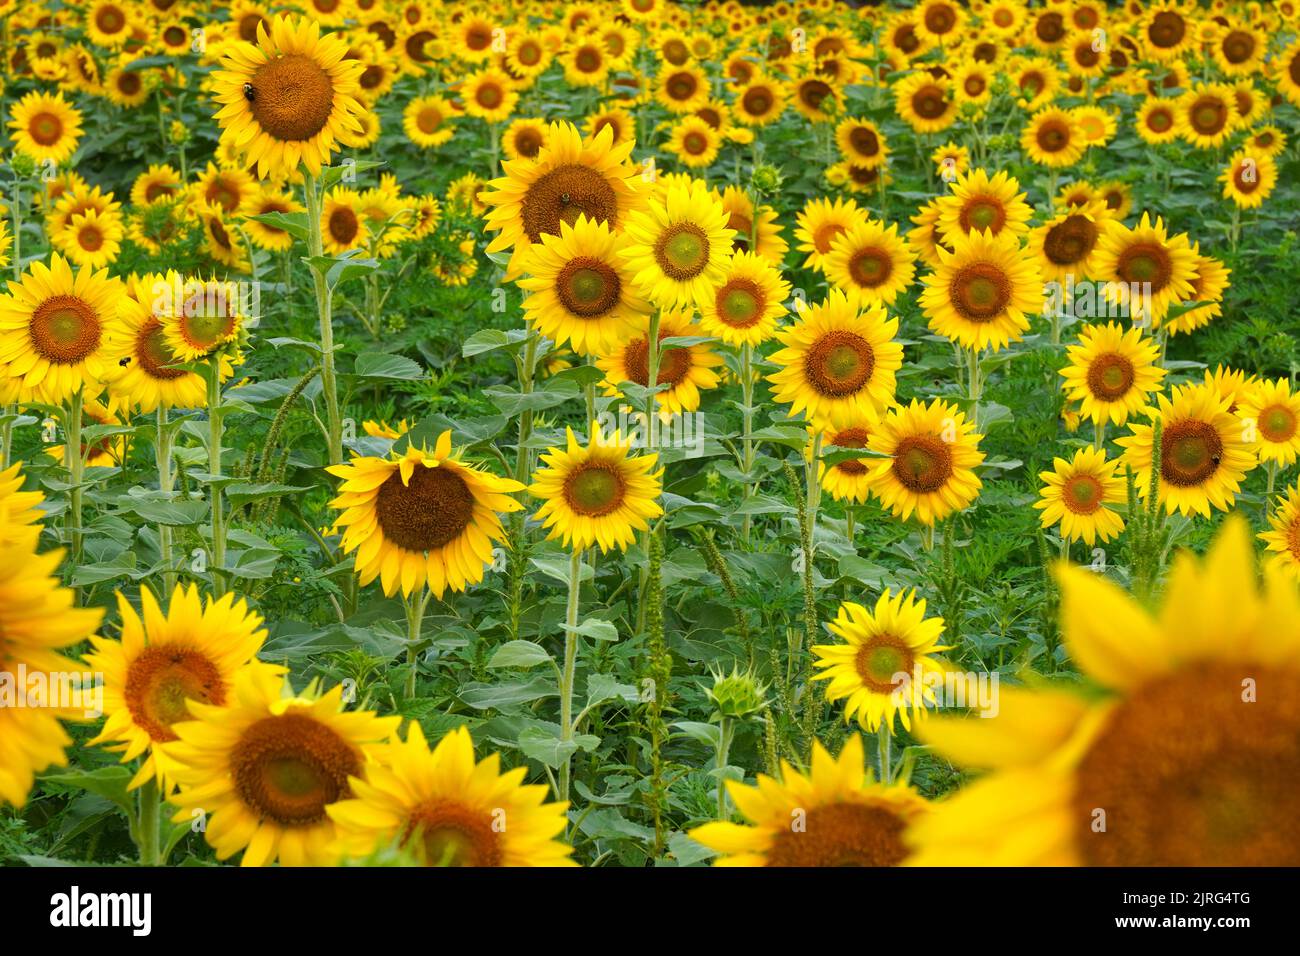 Field of bright yellow sunflowers Stock Photo